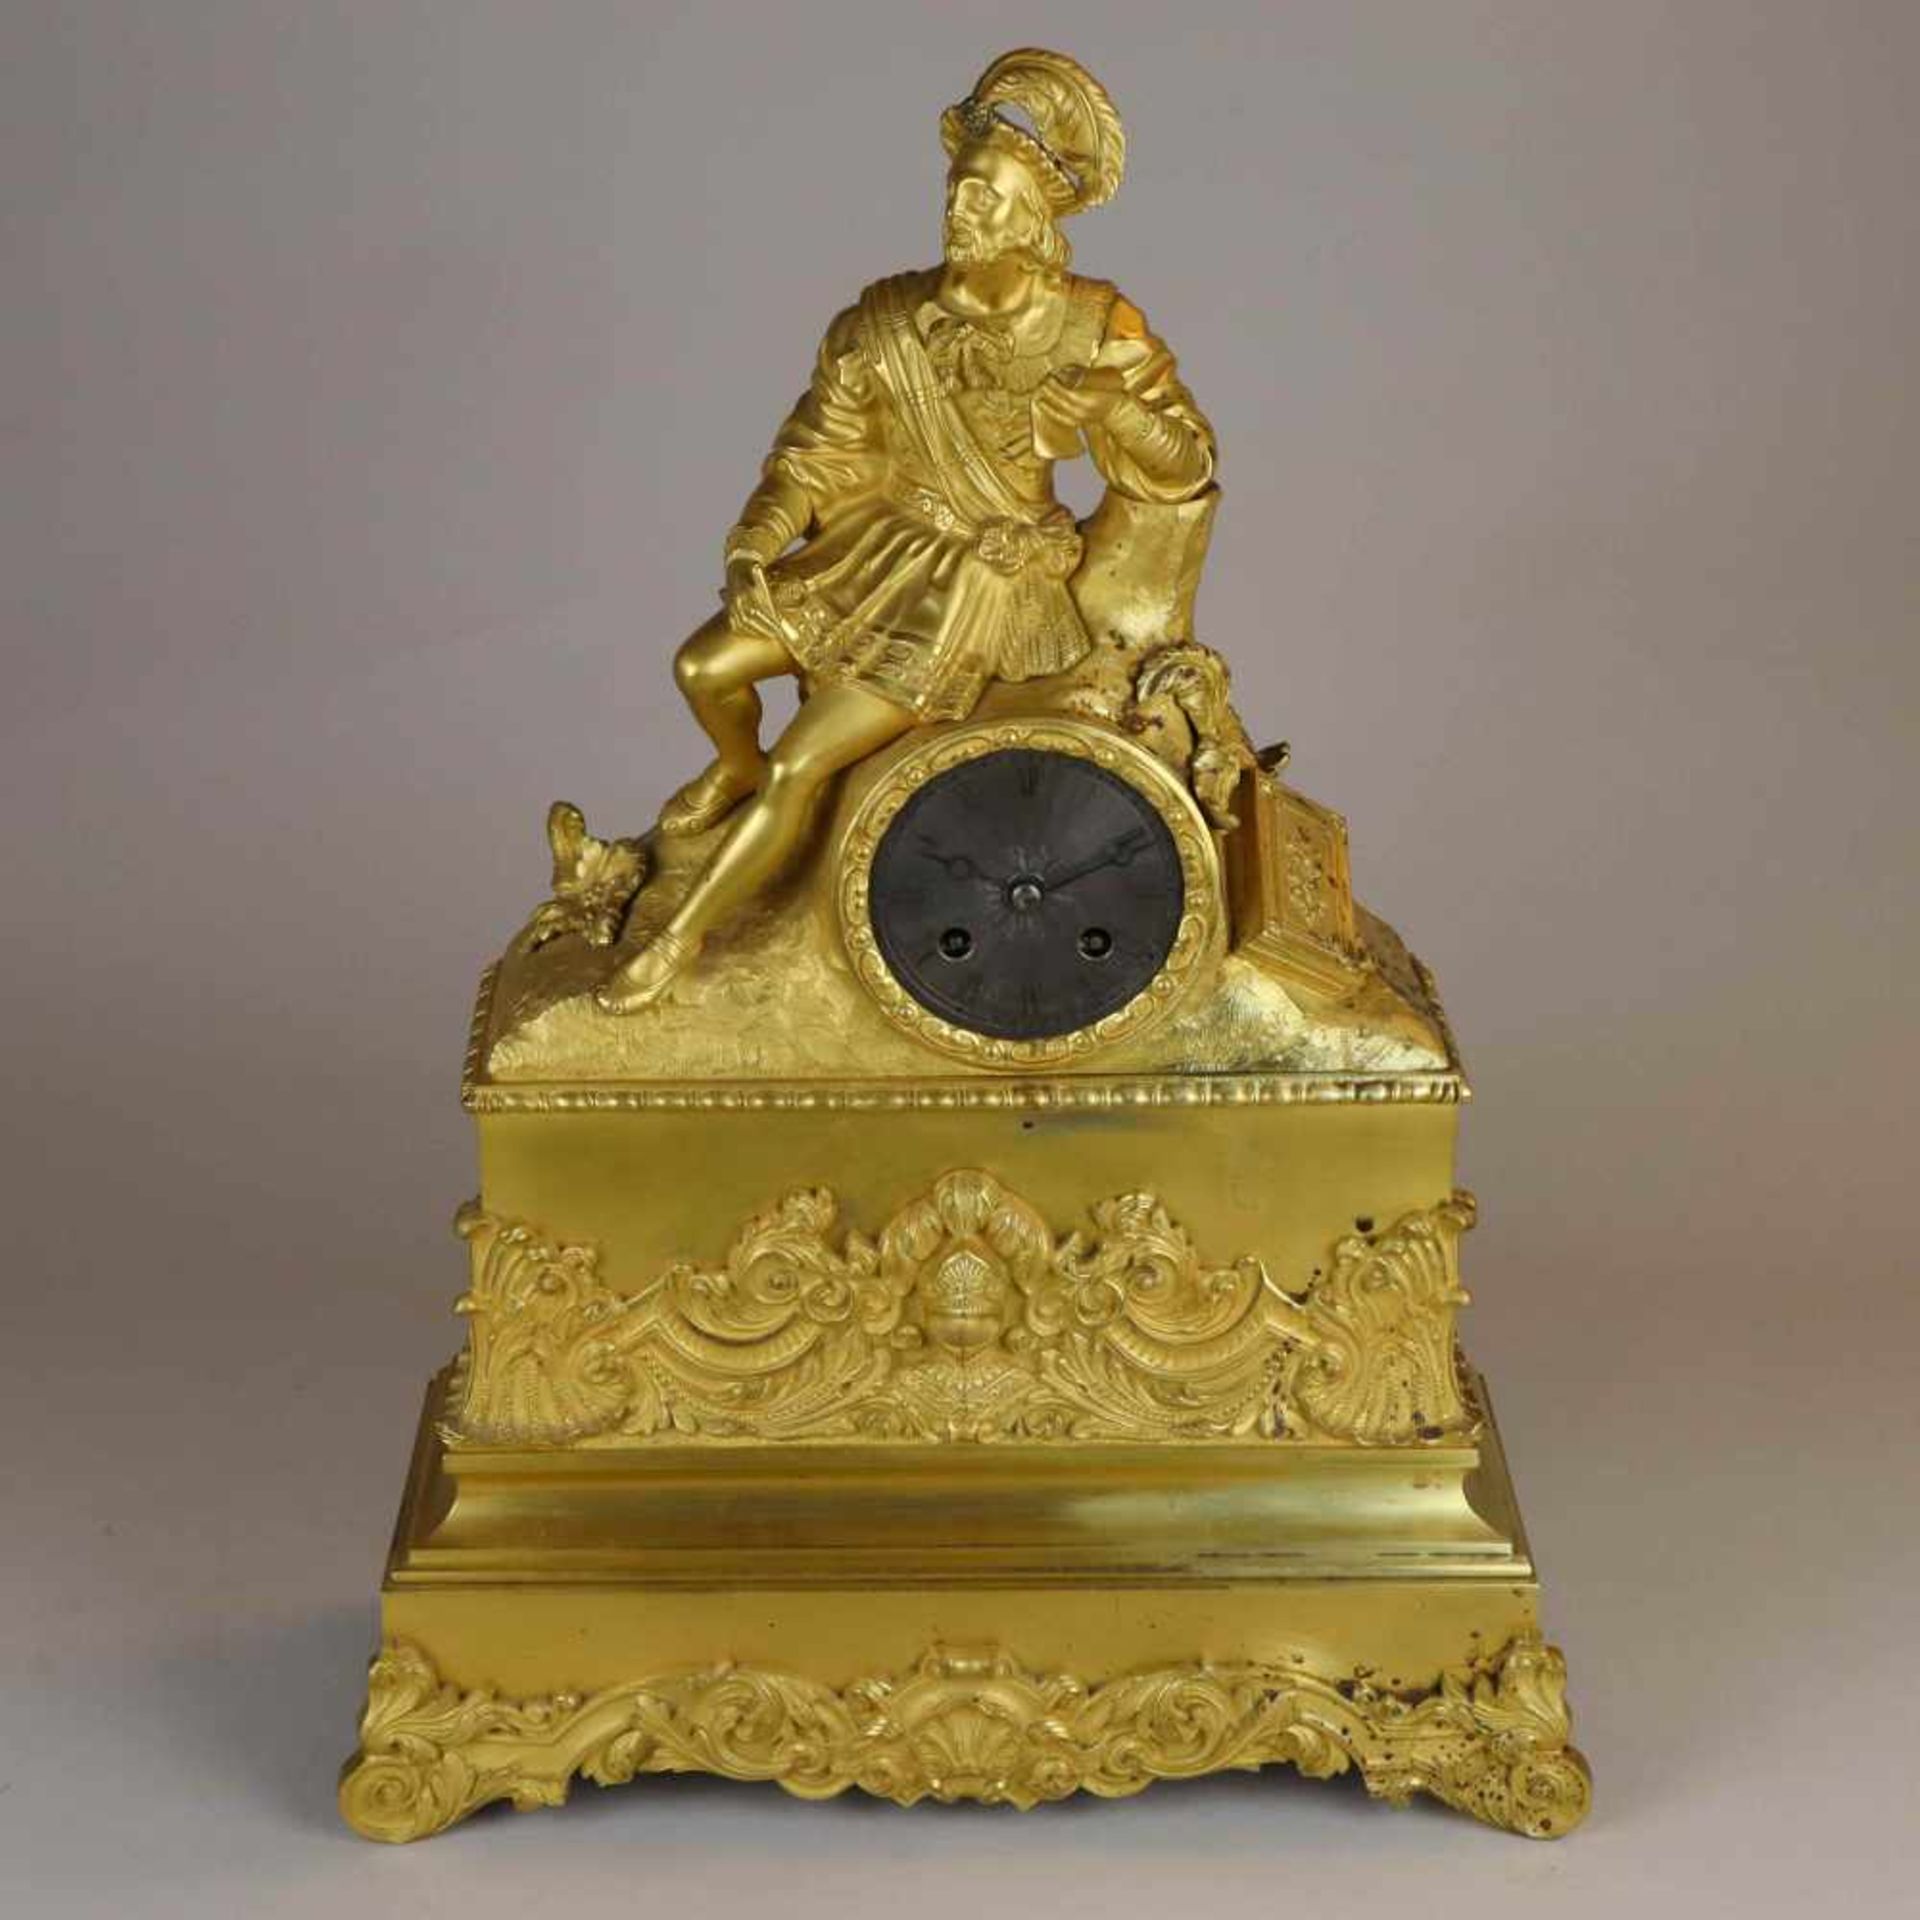 Französische Kaminuhr - um 1840, Bronze, vergoldet, hoher gekehlter, stufig abgesetzter Sockel mit